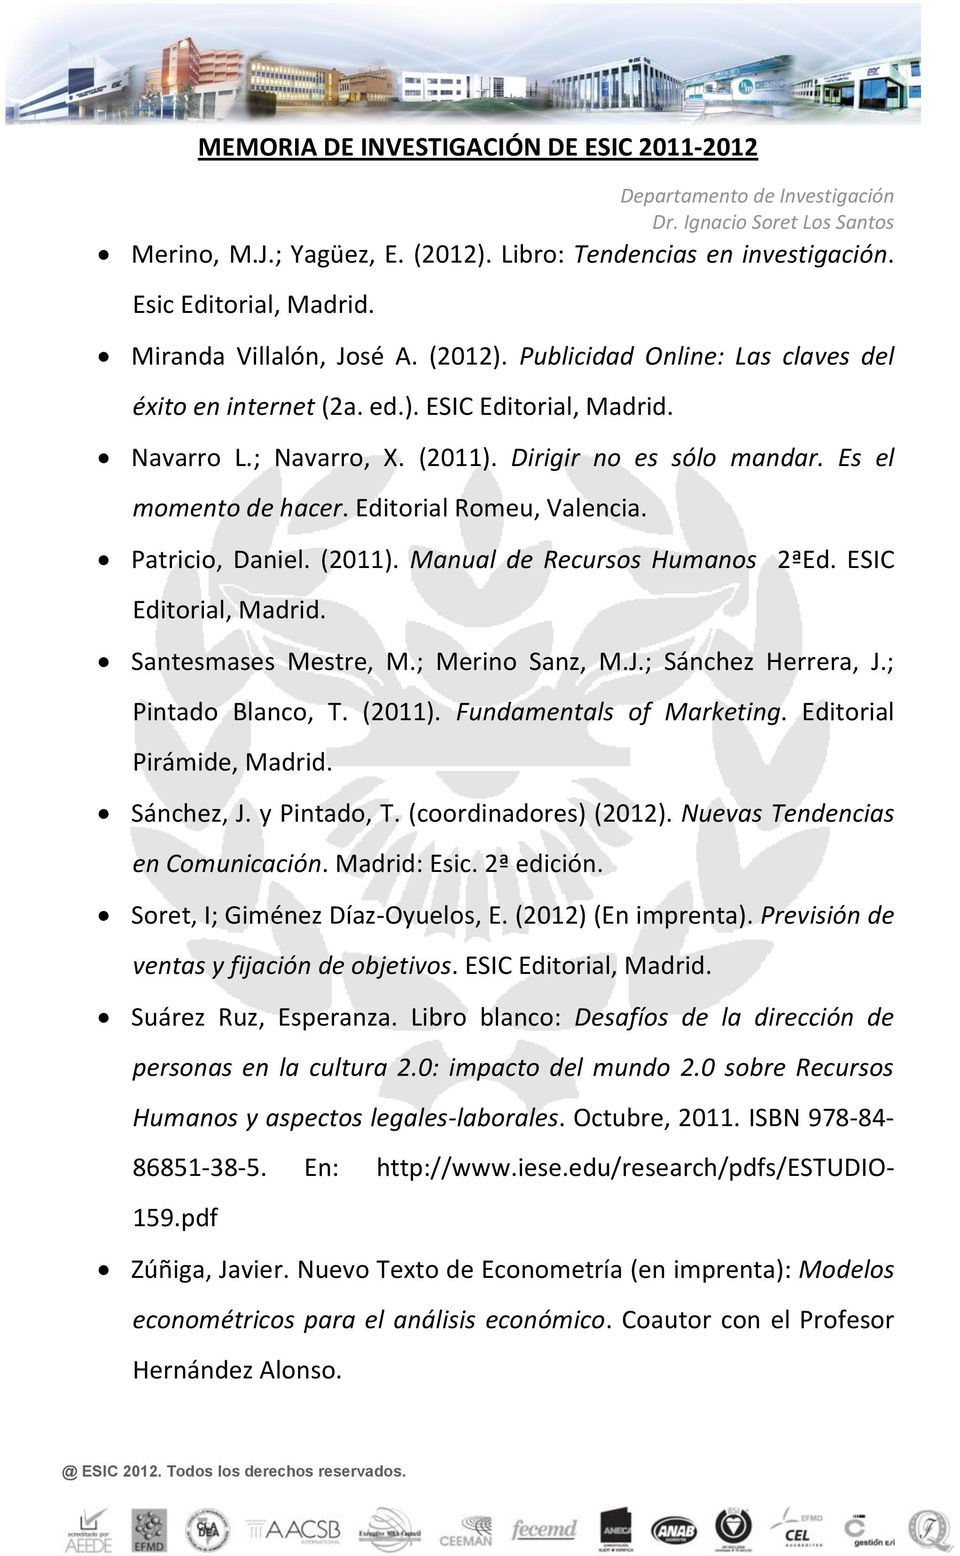 Santesmases Mestre, M.; Merino Sanz, M.J.; Sánchez Herrera, J.; Pintado Blanco, T. (2011). Fundamentals of Marketing. Editorial Pirámide, Madrid. Sánchez, J. y Pintado, T. (coordinadores) (2012).